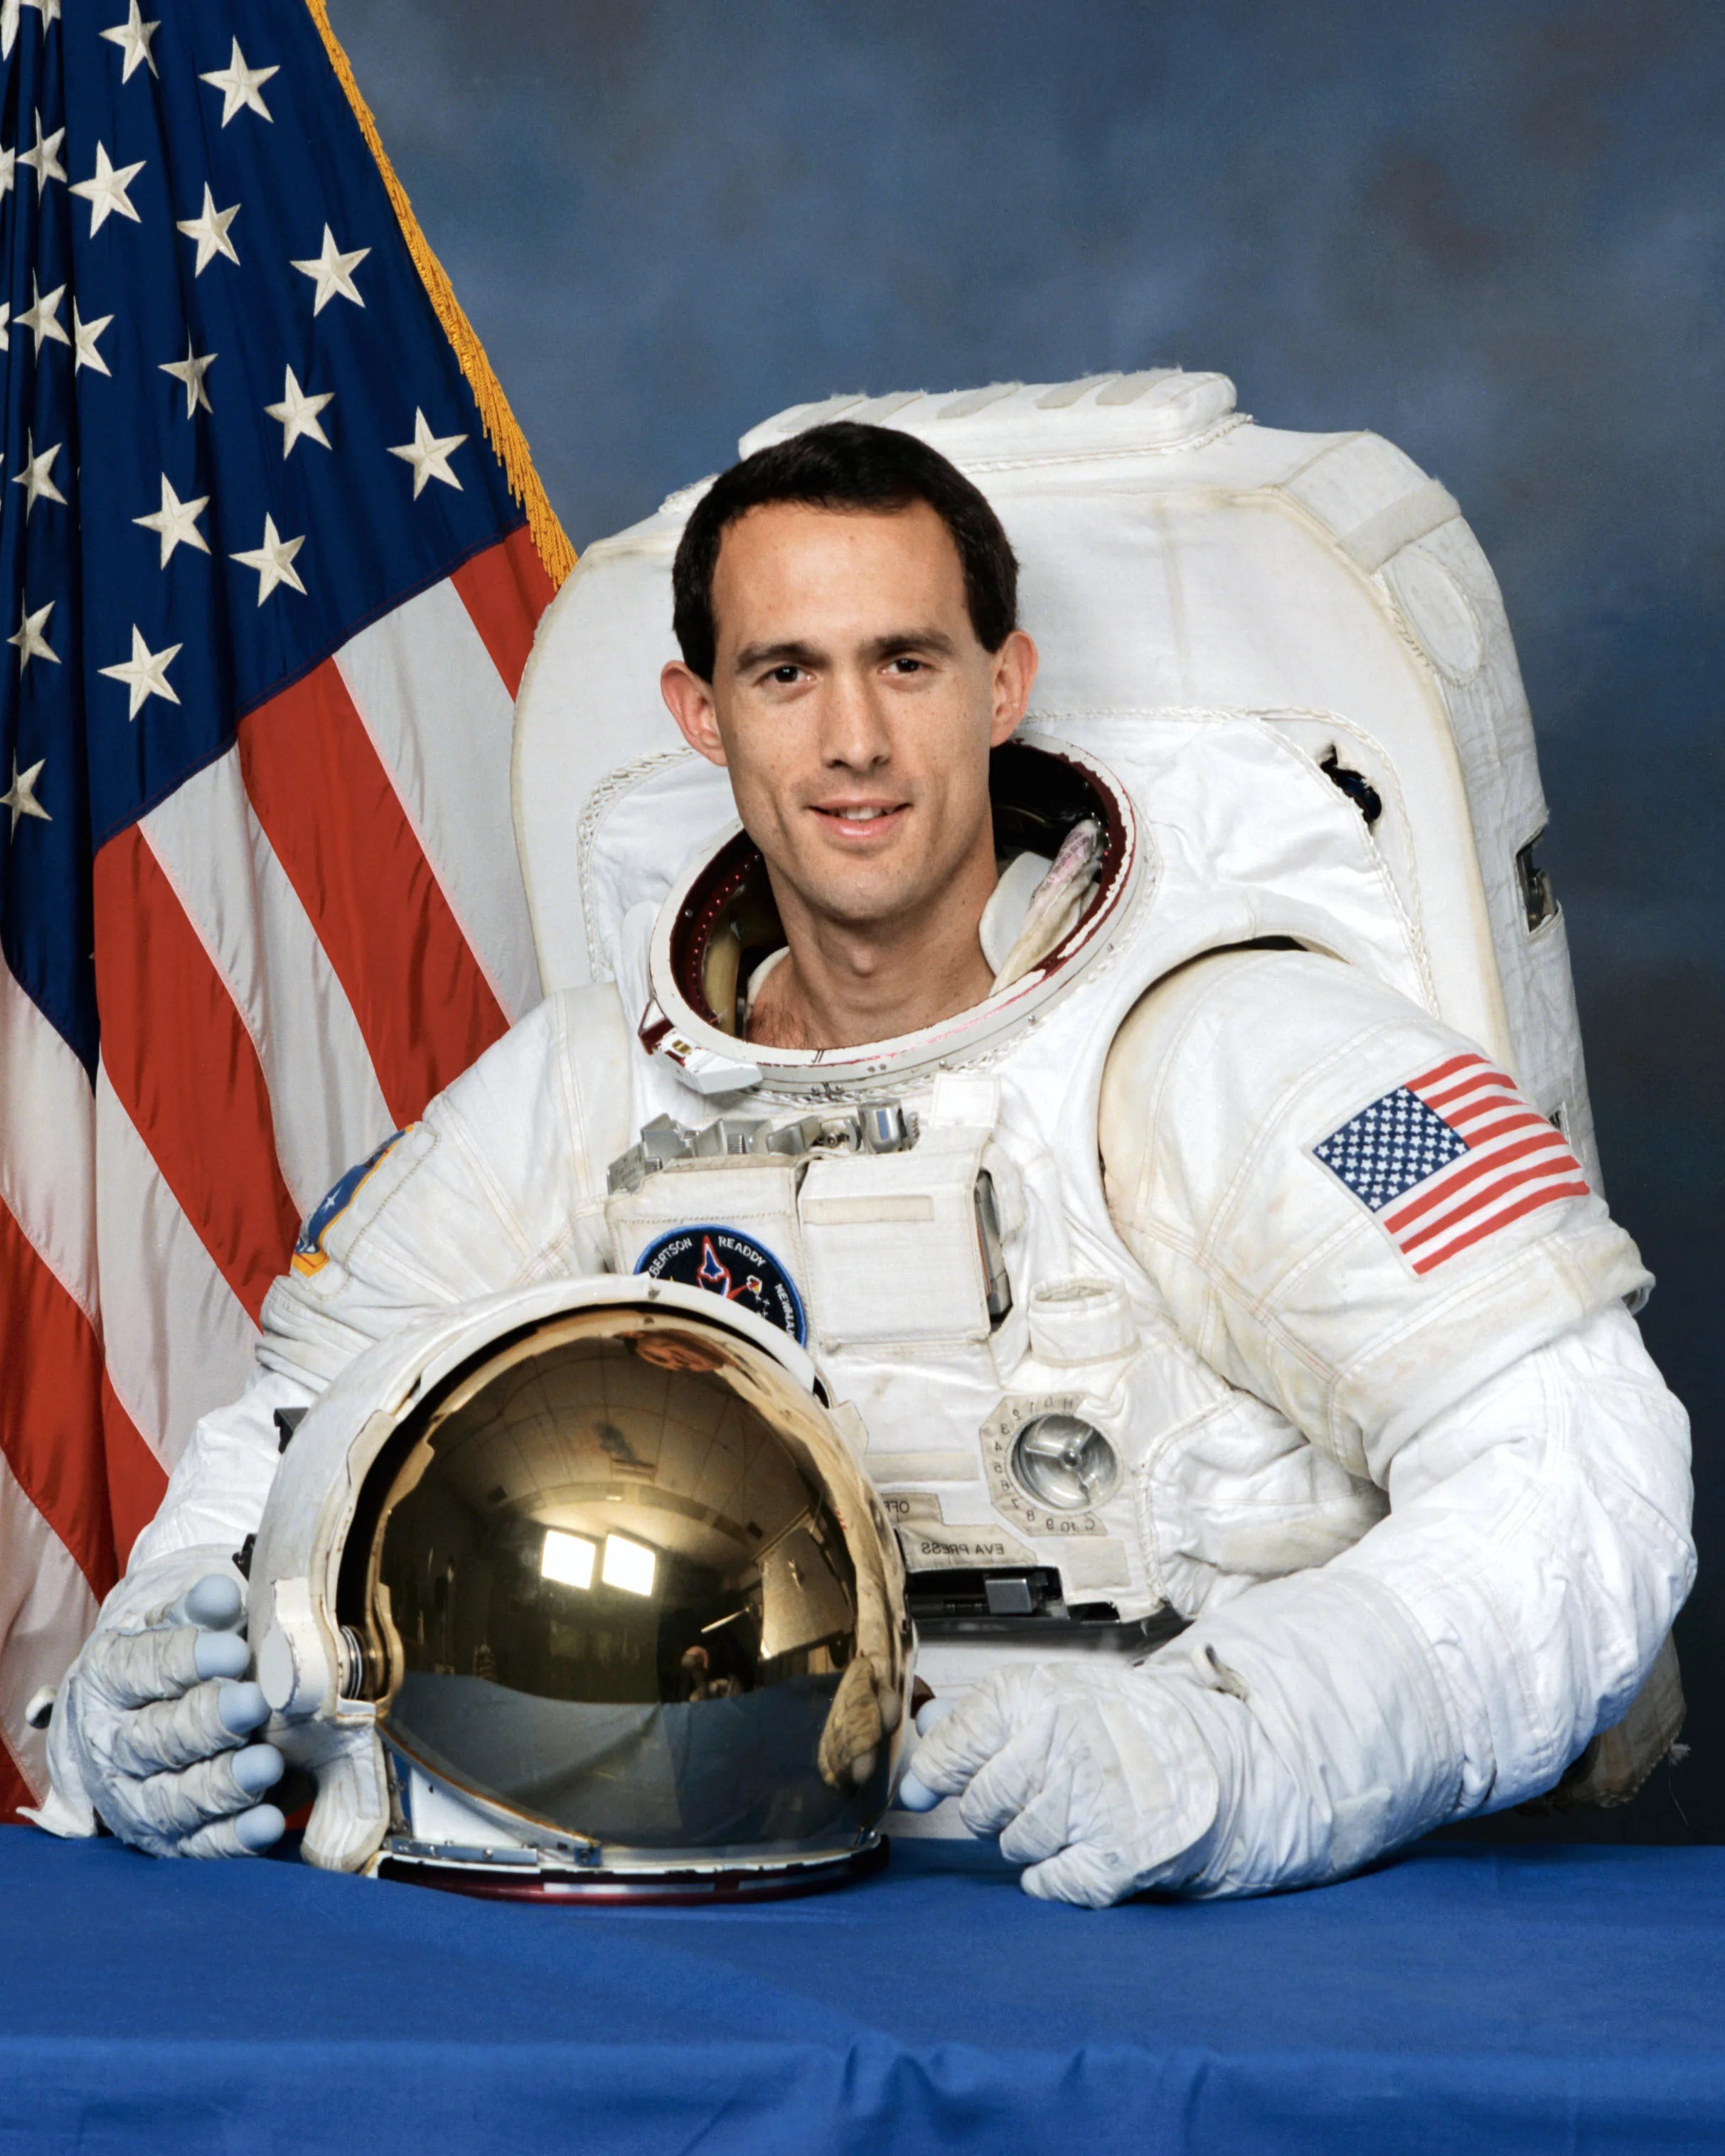 Official astronaut portrait of James Newman.